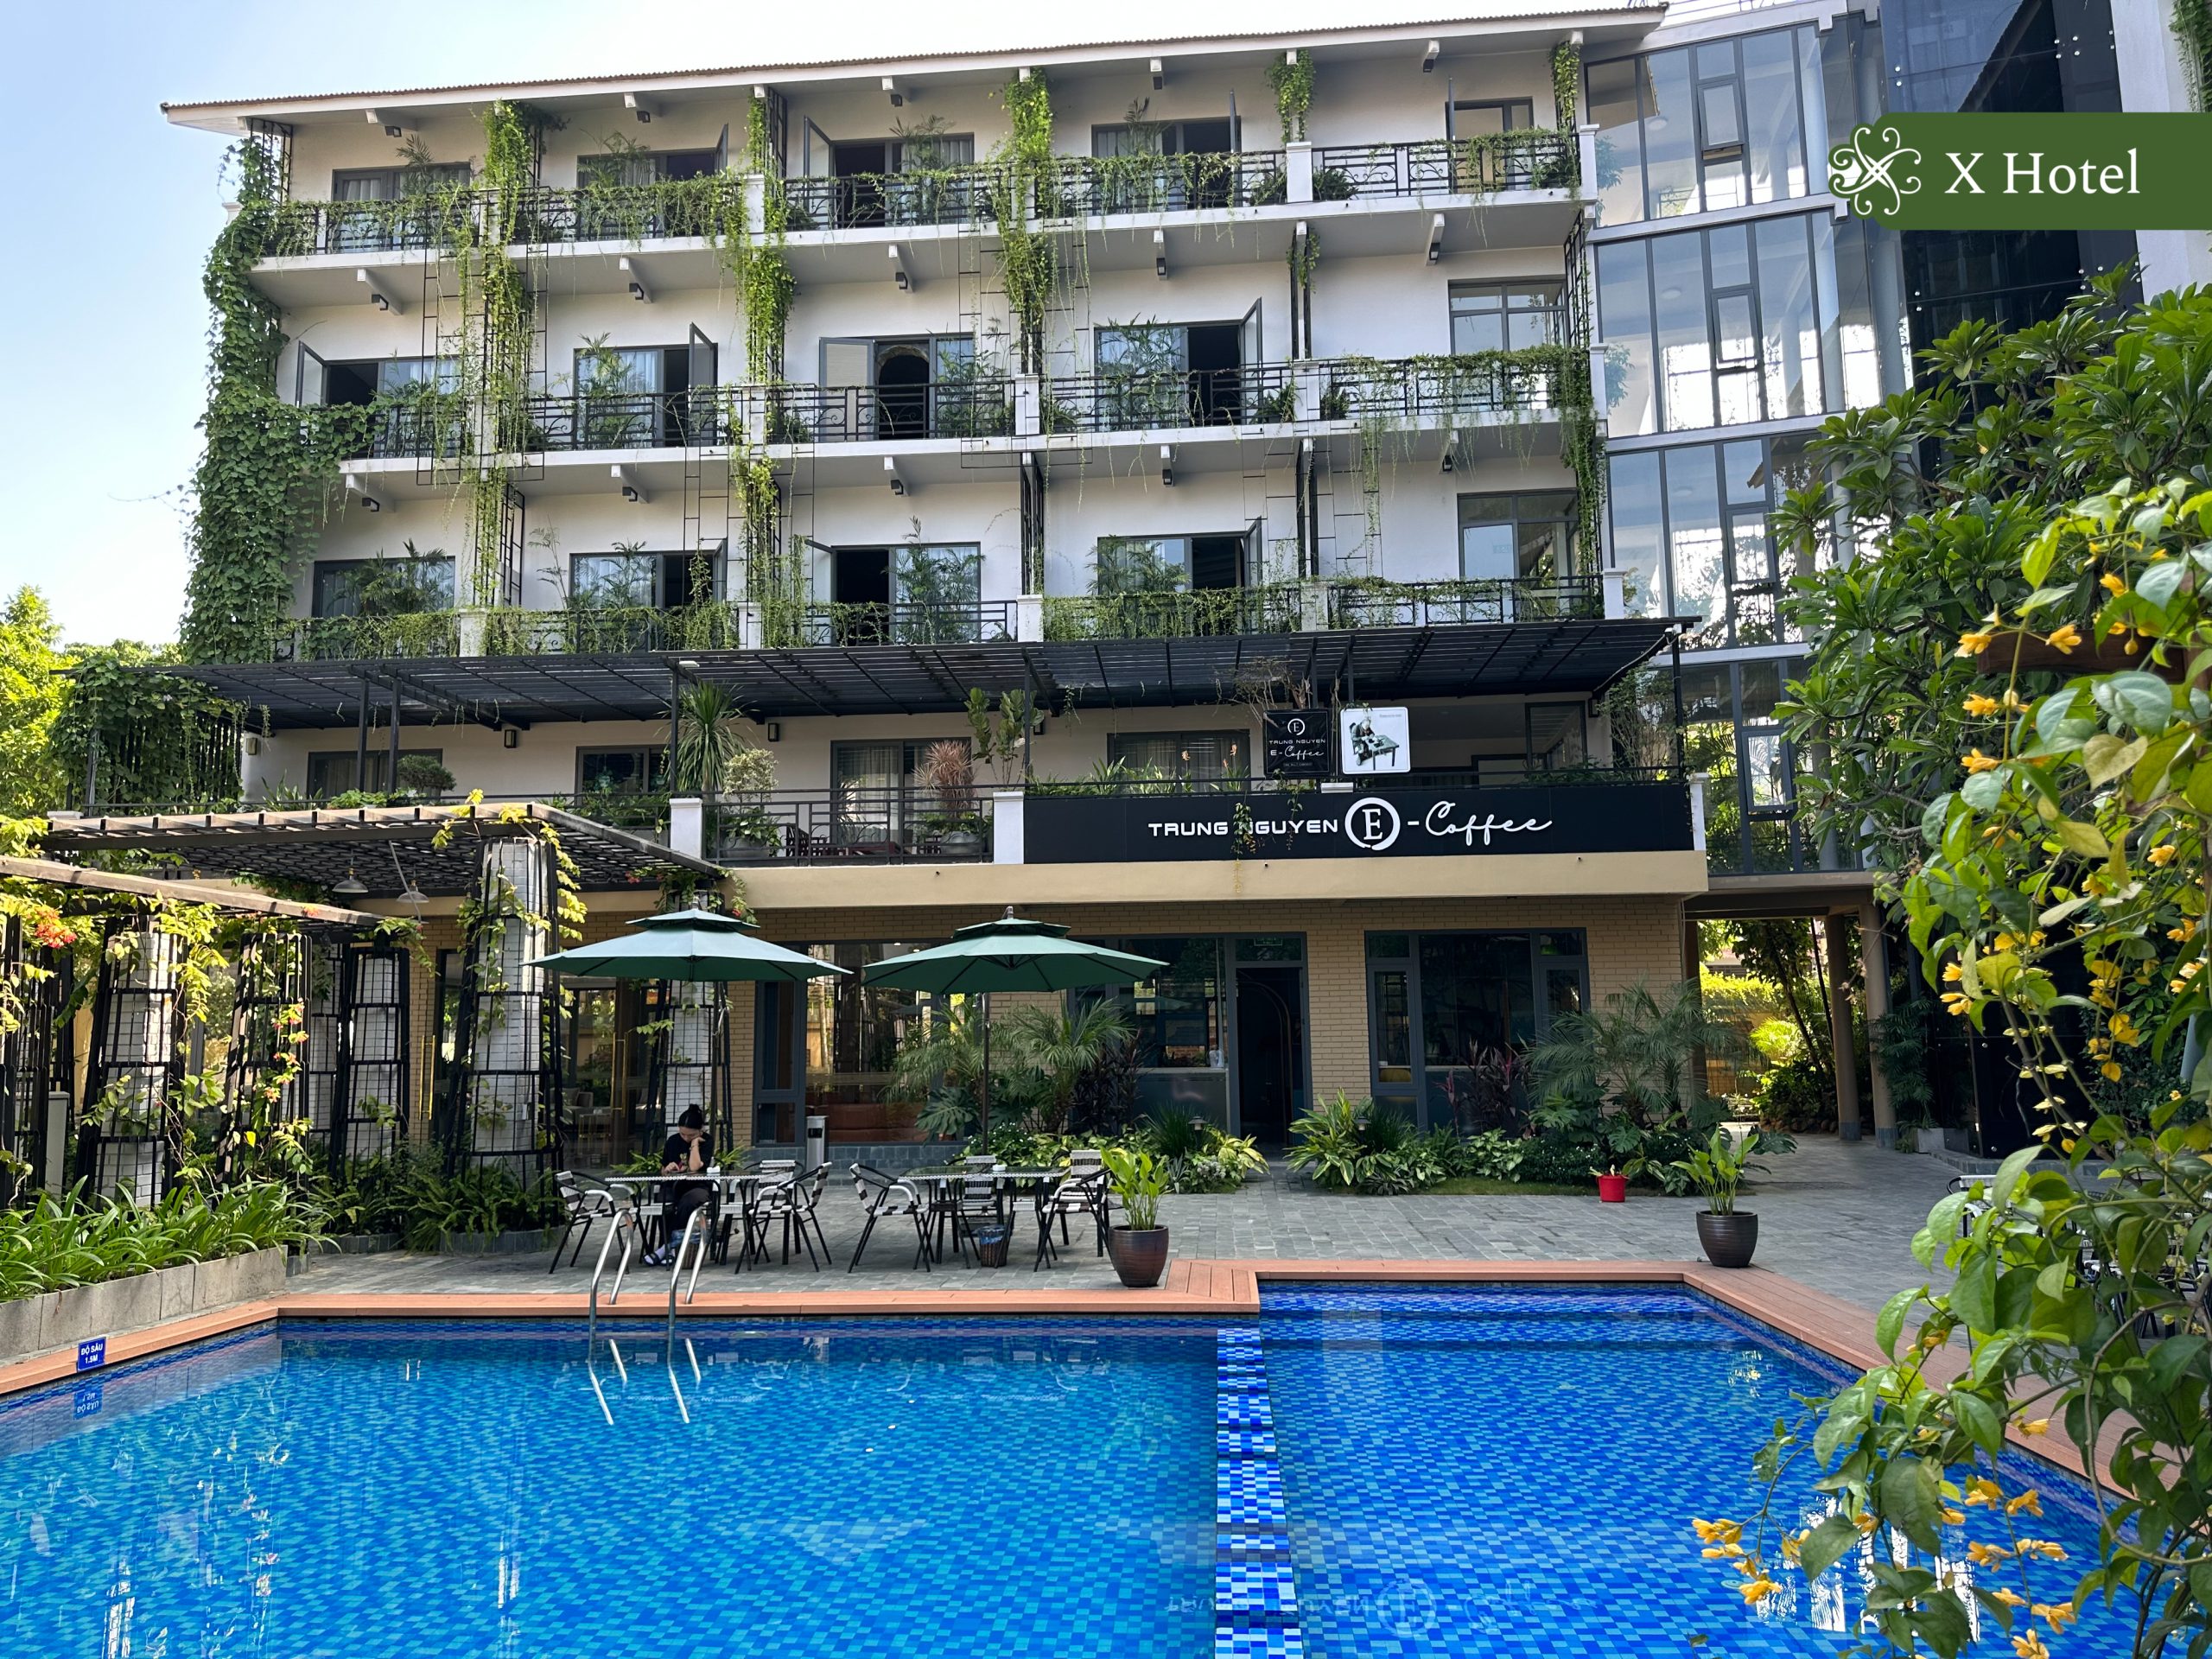 Khách sạn Thái Nguyên có nhà hàng X Hotel là một trong những khách sạn 3 sao hiếm hoi sở hữu kiến trúc xanh độc đáo